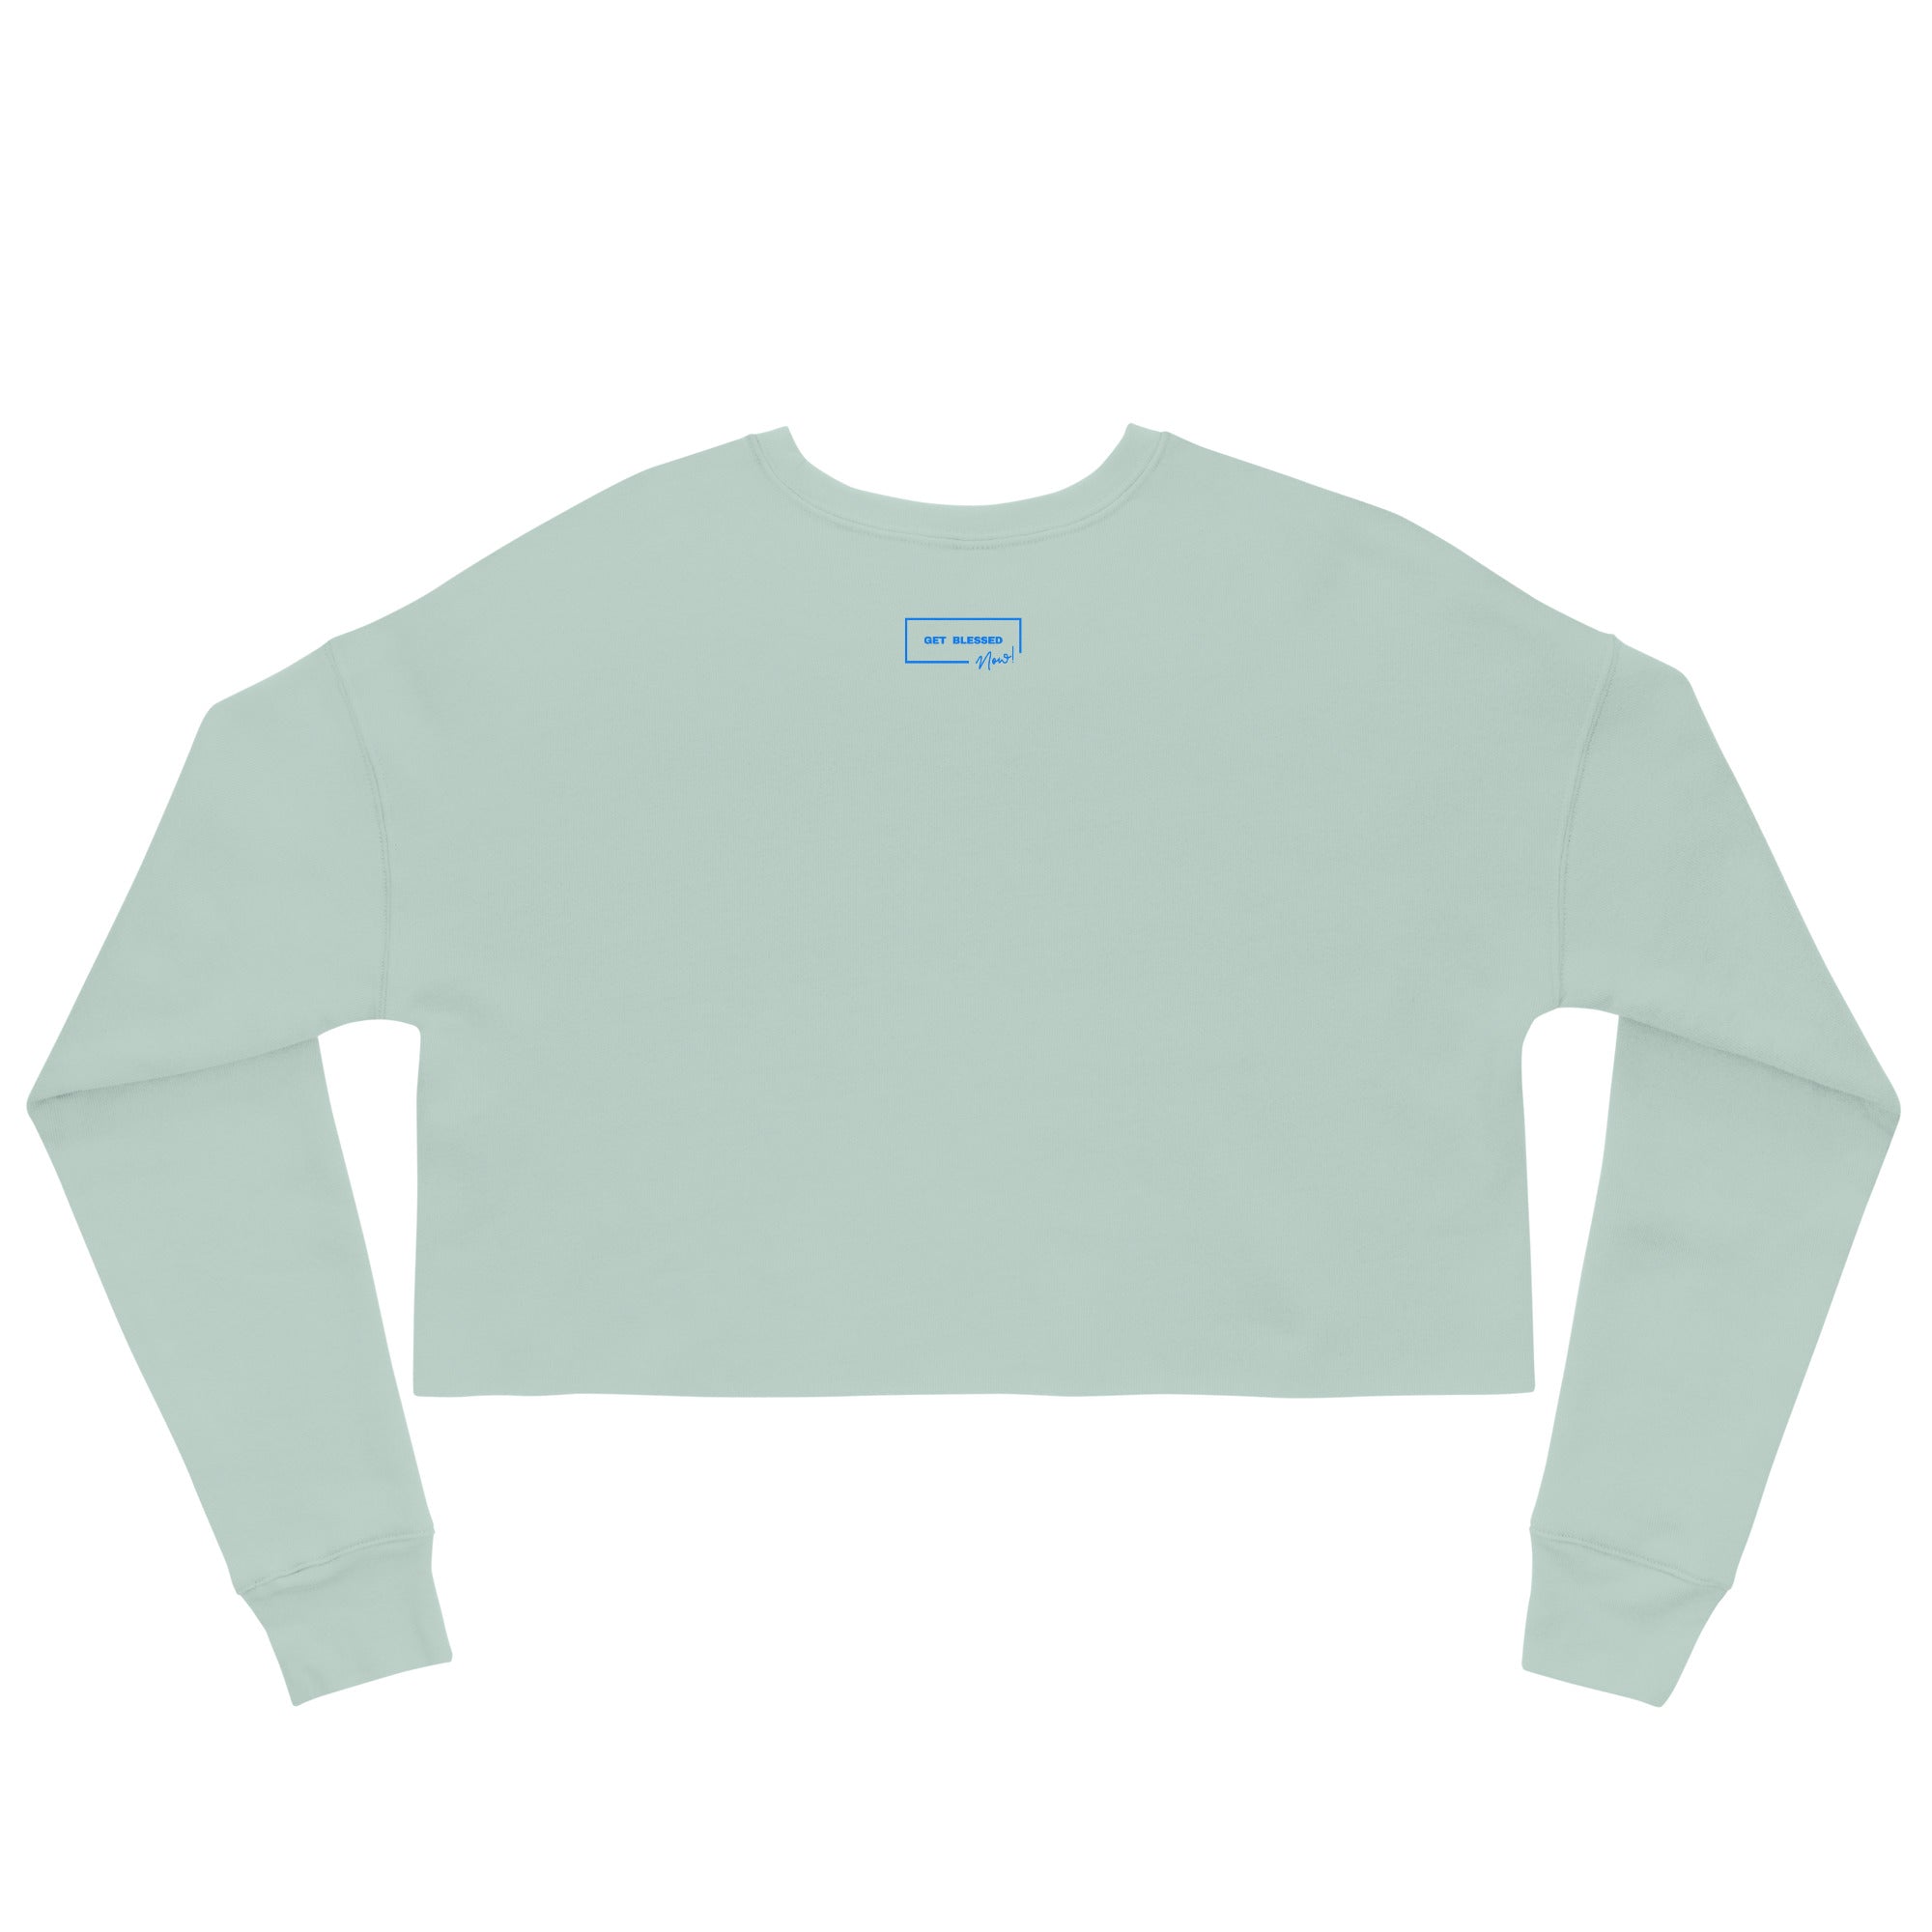 Crop Top Sweatshirt | CHILD OF GOD Crop Sweatshirt | Get Blessed Now